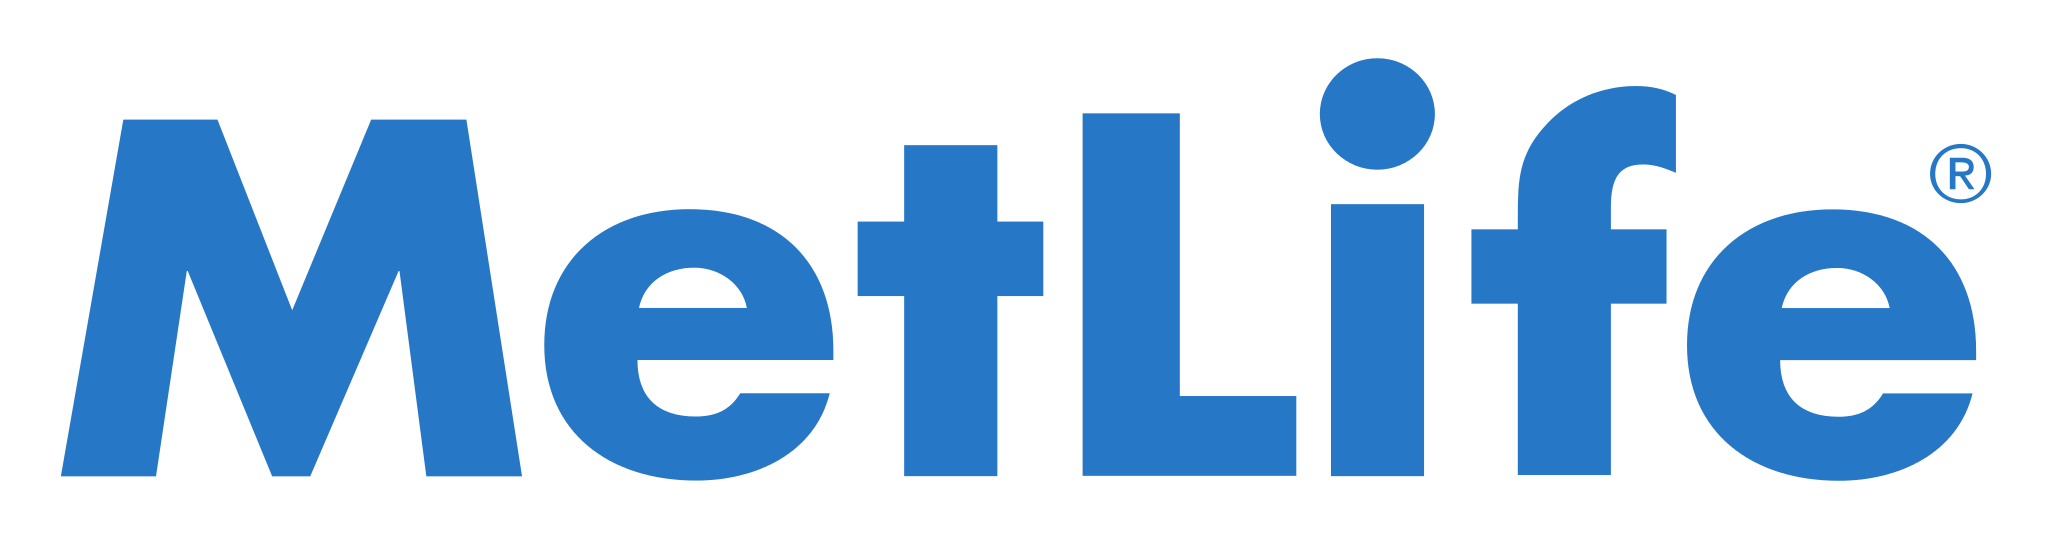 MetLife Logo PNG Image